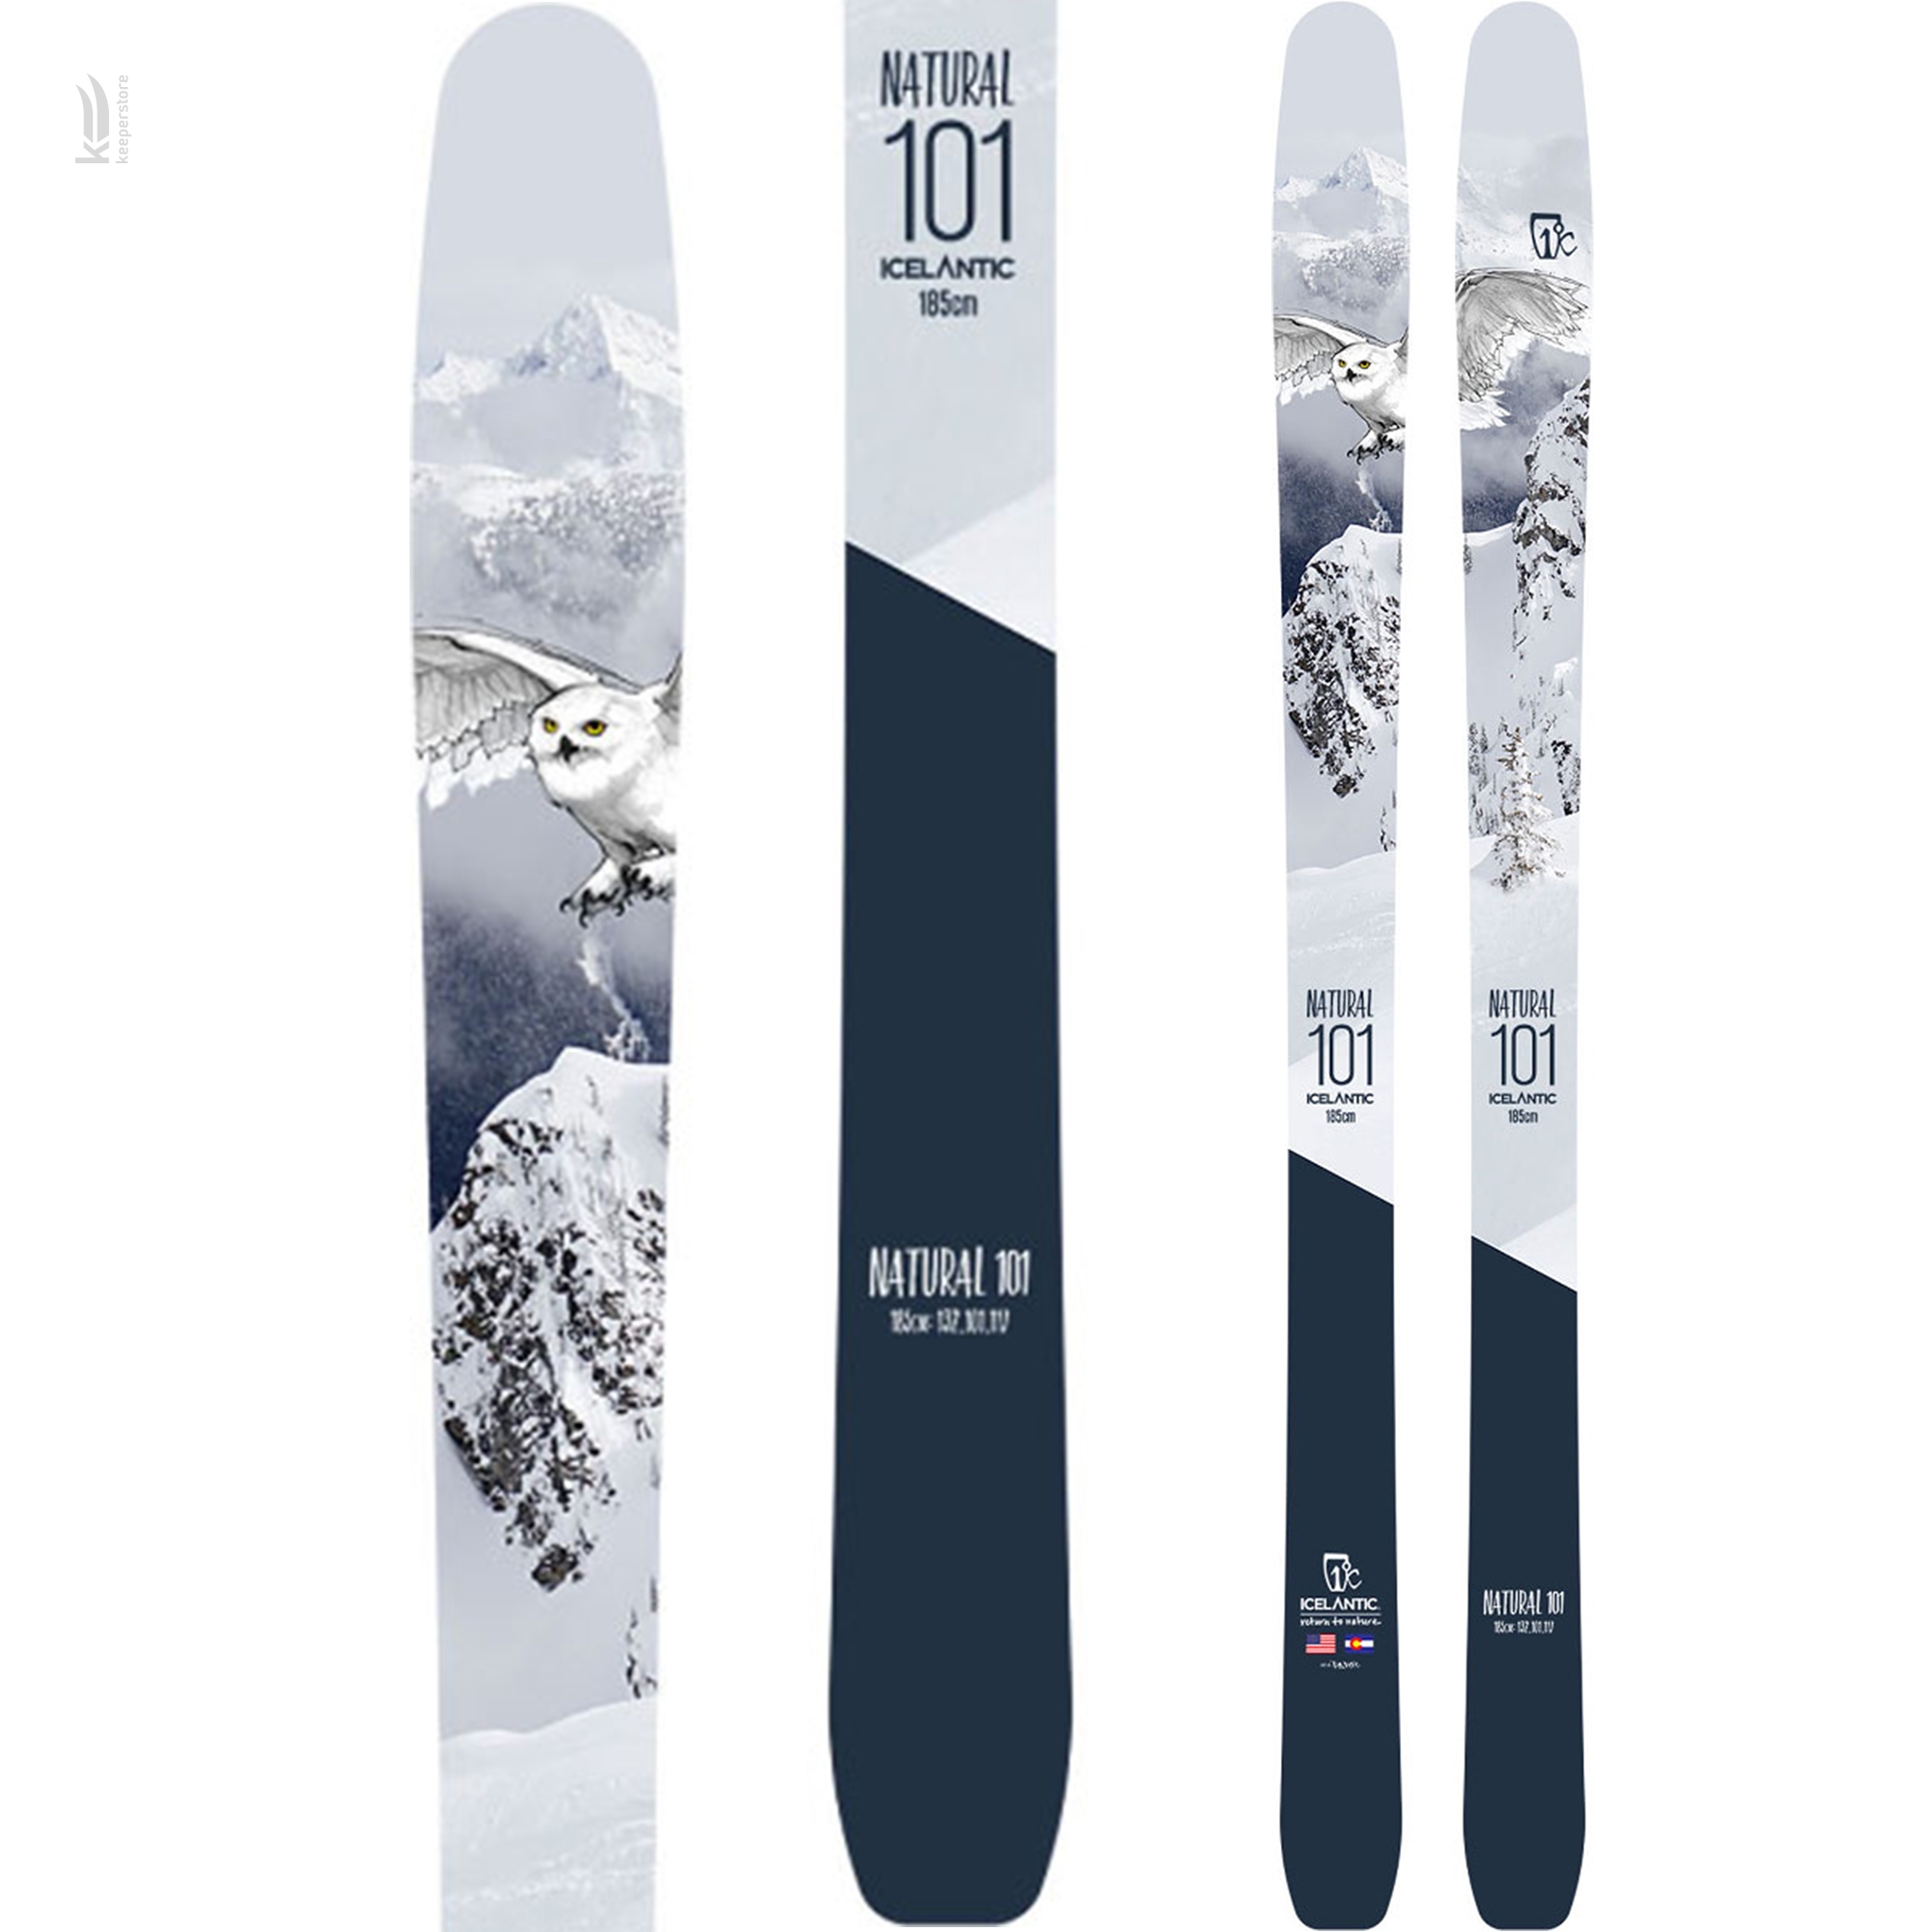 Лыжи для бэккантри Icelantic Natural 101 2018/2019 185cm